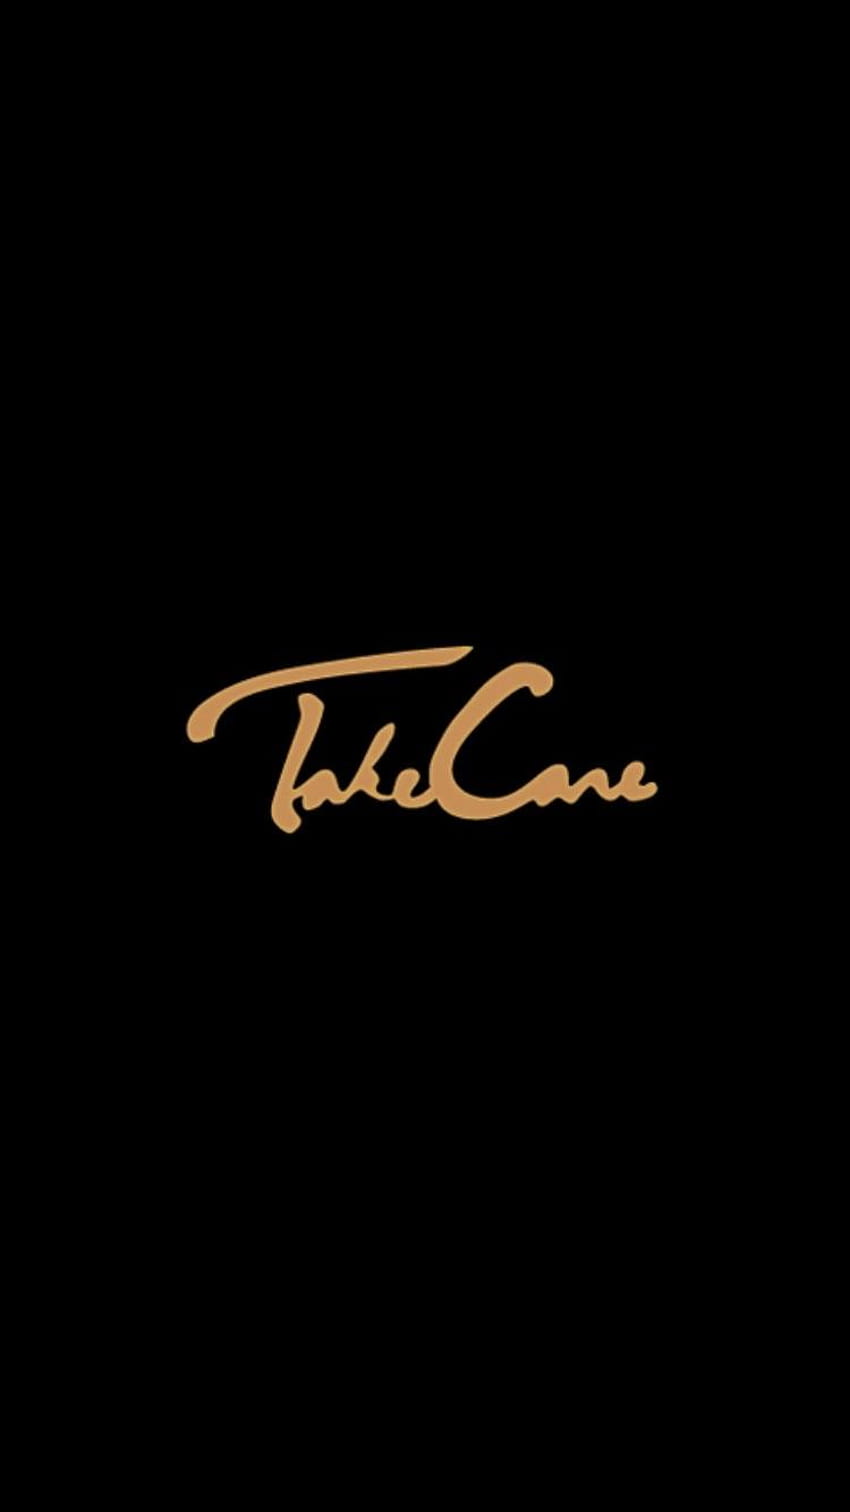 Take Care Drake, sampul album drake wallpaper ponsel HD